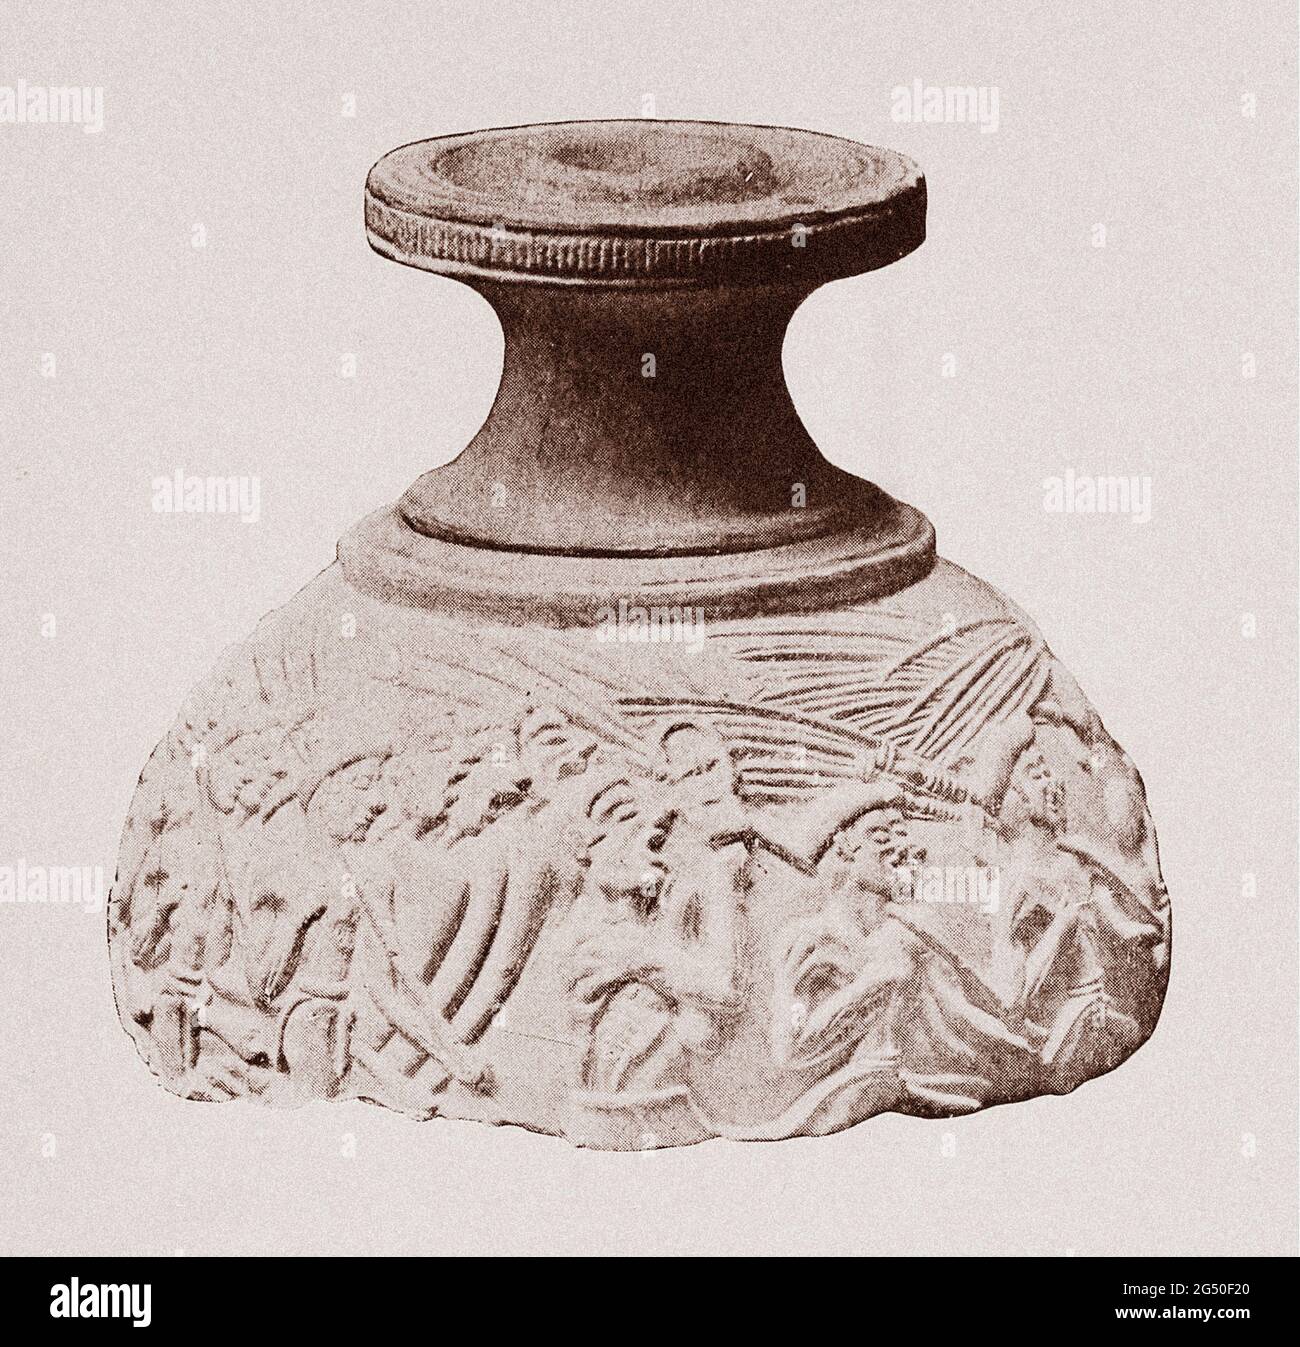 Égypte ancienne. L'Empire. Fragment de vase en pierre sculpté trouvé en Crète. 1912 au milieu d'une procession festale, un prêtre égyptien, avec surélevés Banque D'Images